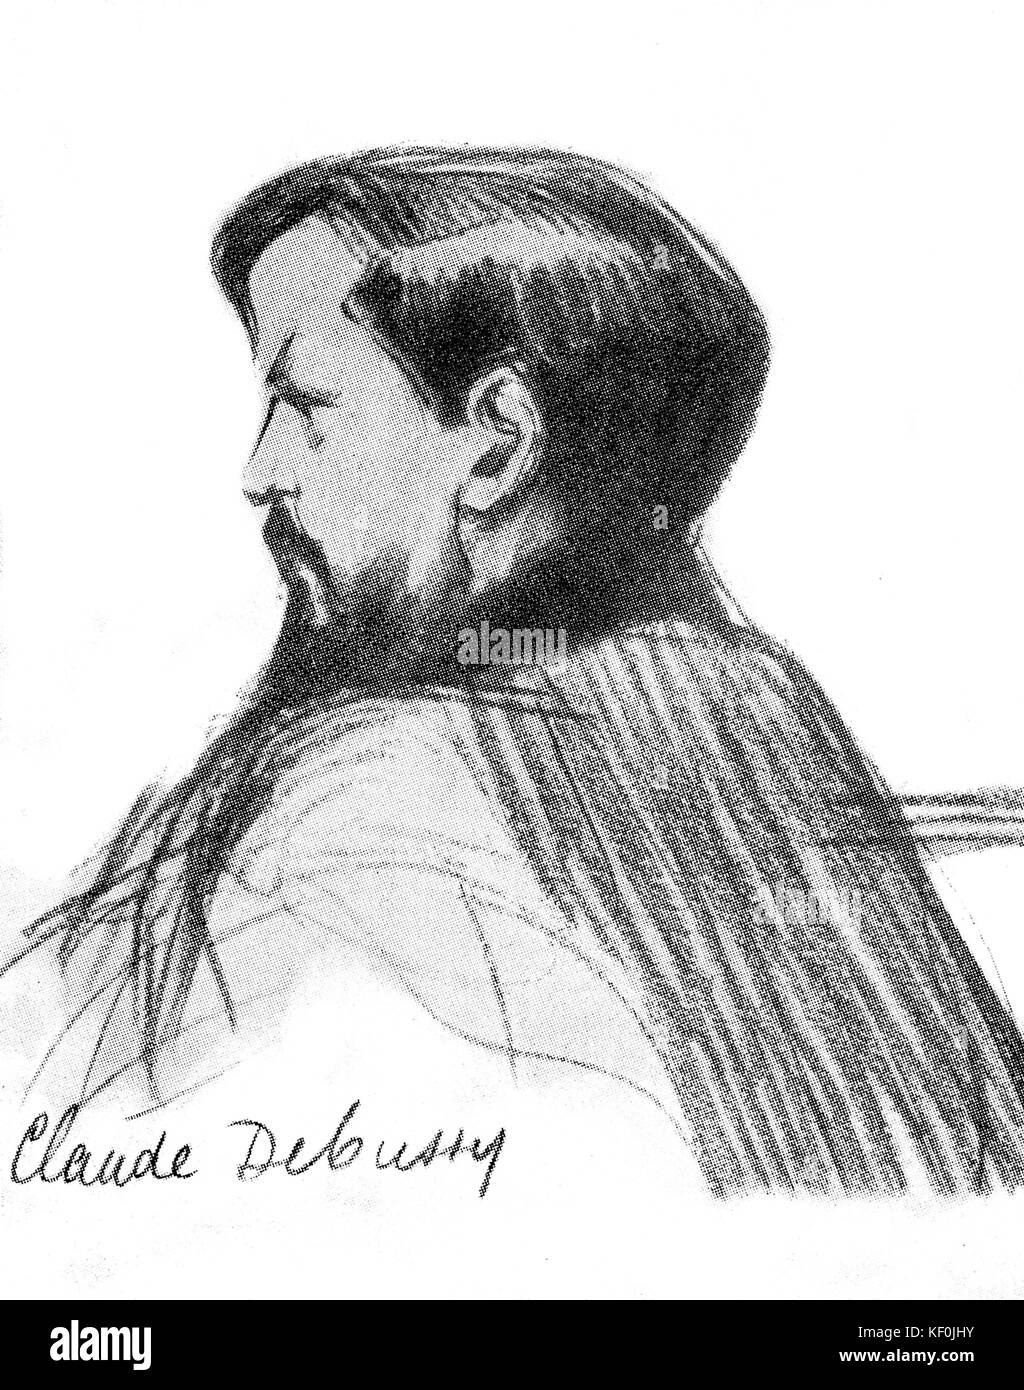 Claude Debussy - Zeichnung Portrait von Henry Detouche, Anfang des 20. Jahrhunderts. CD: der französische Komponist, 22. August 1862 - 25. März 1918. Stockfoto